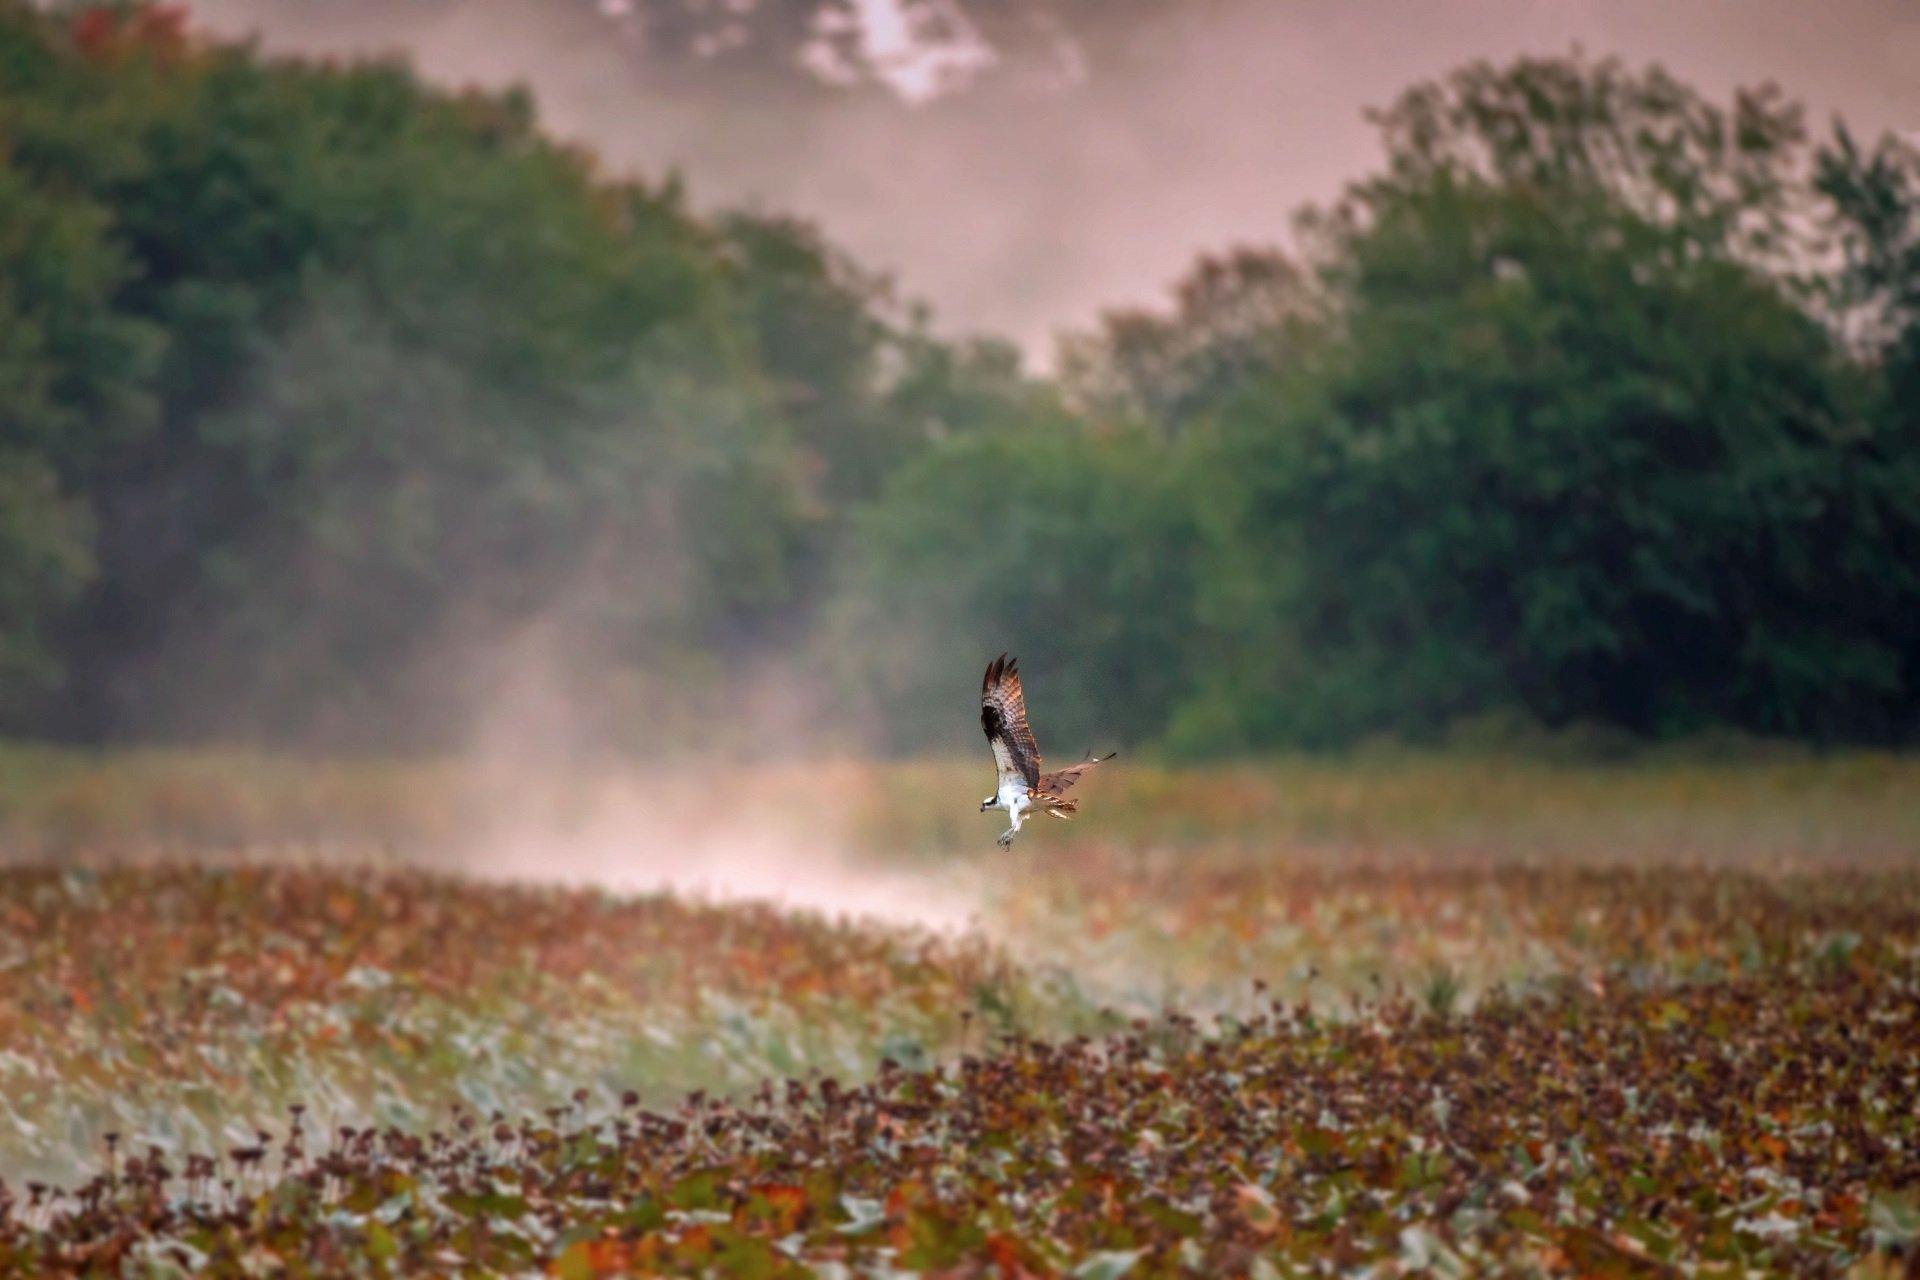 An Osprey swoops through a misty field.